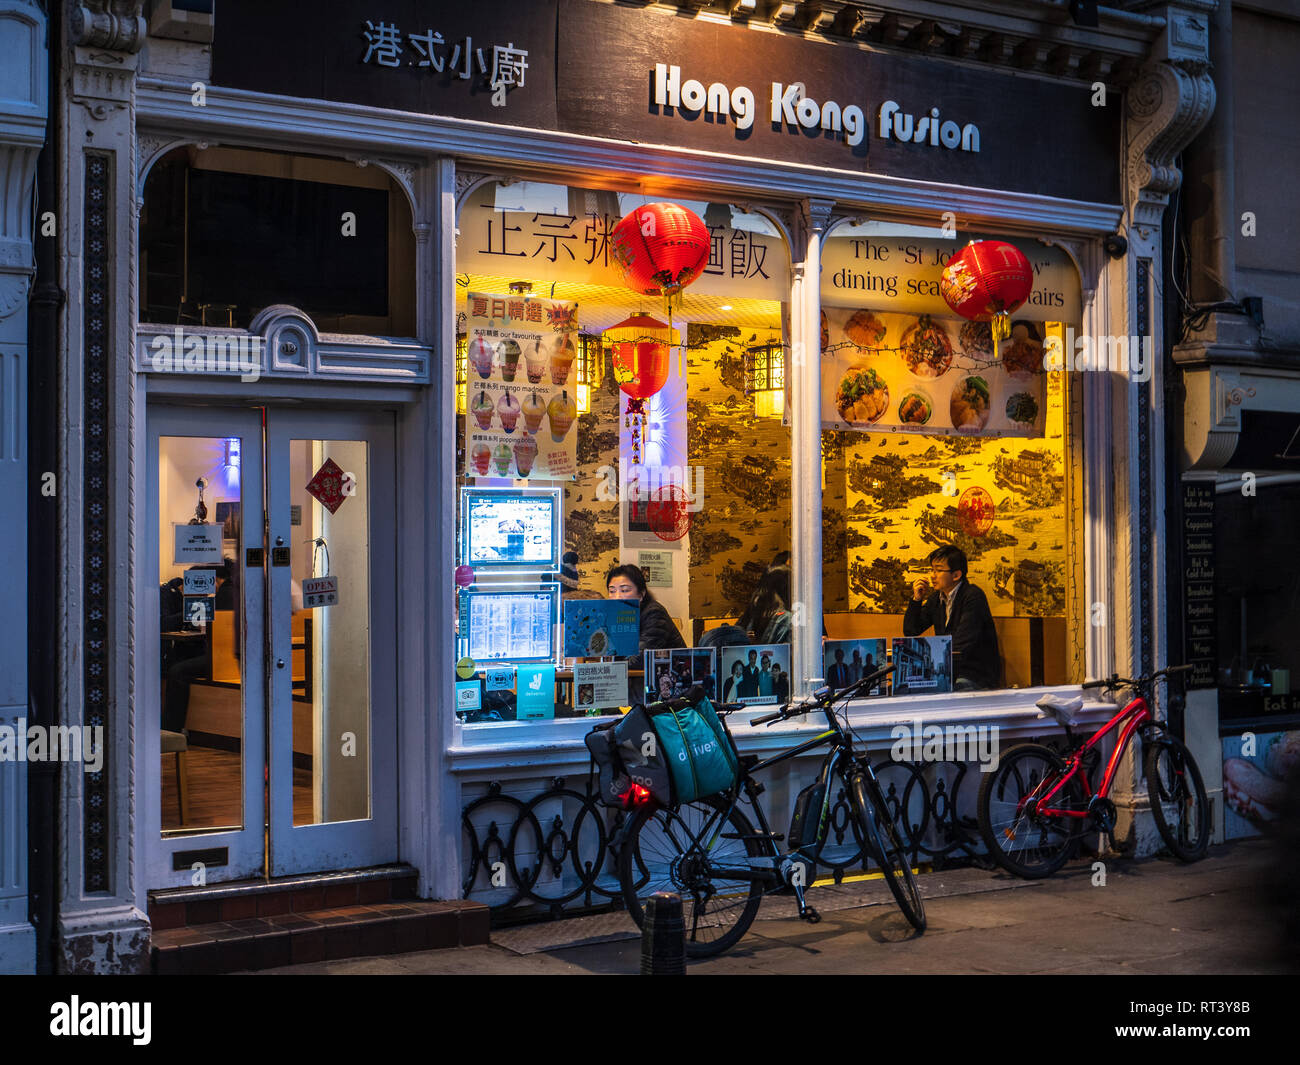 Deliveroo Lebensmittel-lieferservice Kuriere holen Sie Mahlzeiten zum Mitnehmen aus dem Hong Kong Fusion Restaurant im Zentrum von Cambridge Großbritannien Stockfoto